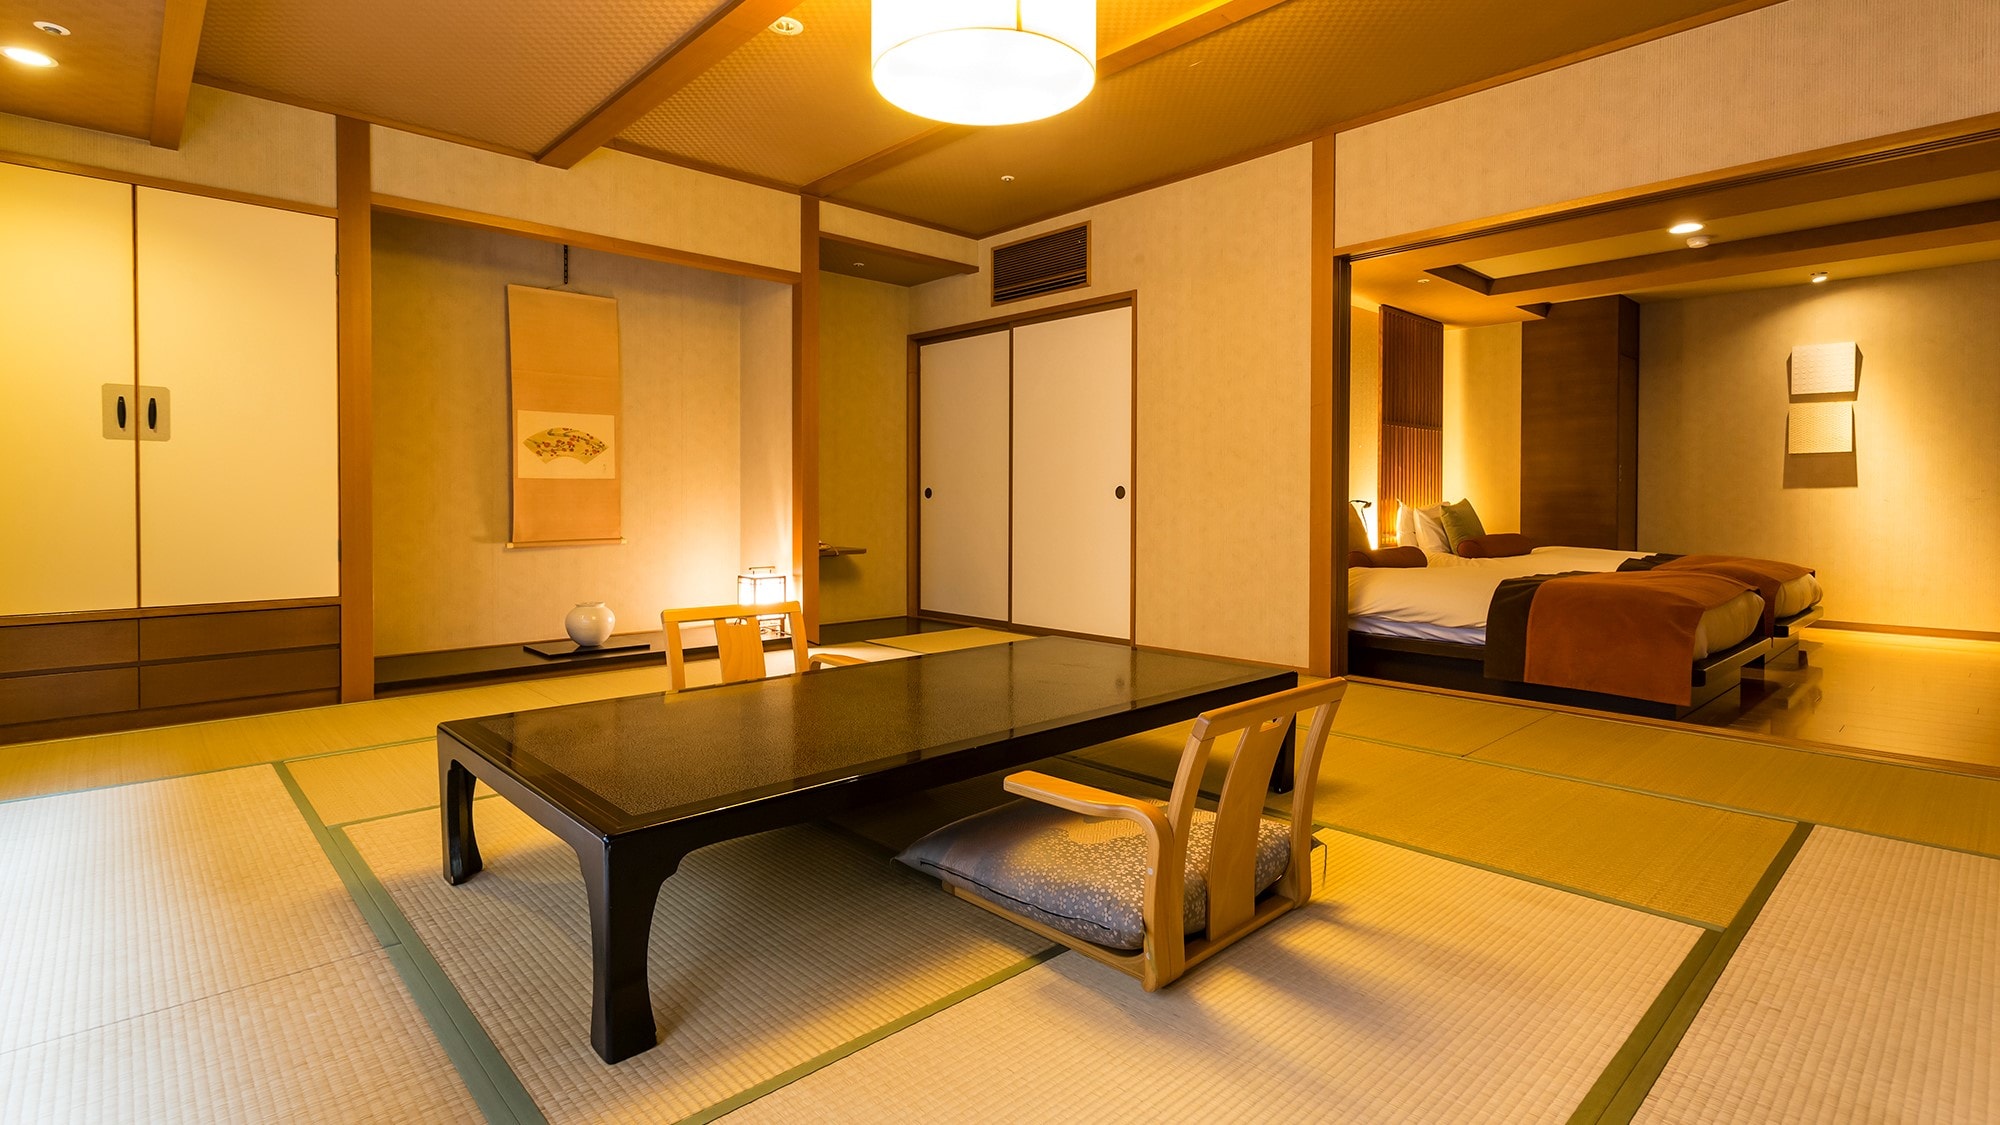 ตัวอย่างห้องสไตล์ญี่ปุ่น-ตะวันตกพร้อมบ่ออาบน้ำกลางแจ้งฝั่งเมือง